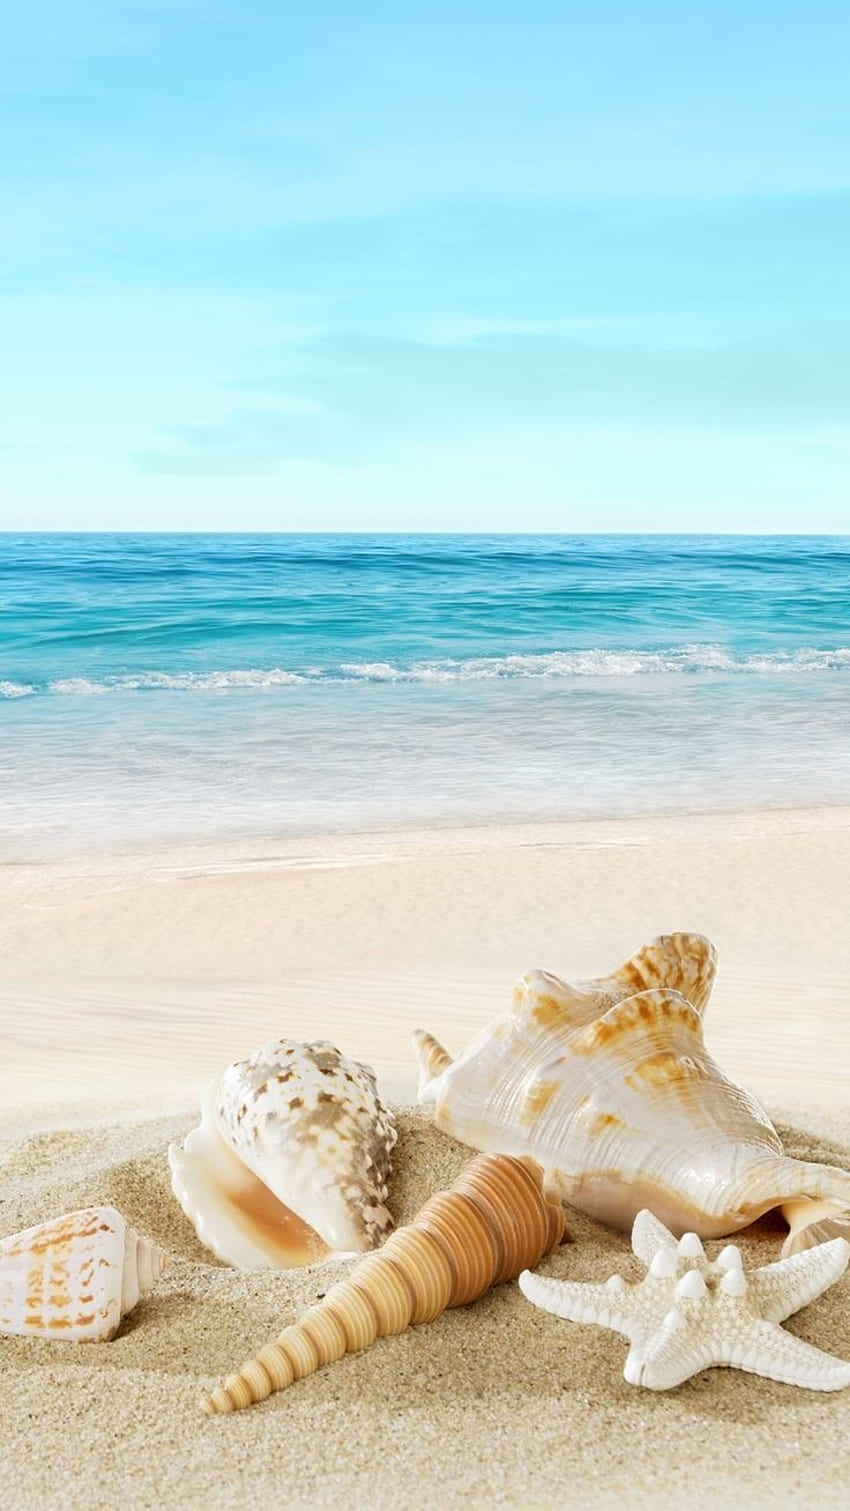 Hình nền điện thoại bãi biển HD với làn nước trong xanh và cát trắng mịn sẽ khiến cho bạn cảm thấy sảng khoái và thư thái. Hãy chiêm ngưỡng cảnh biển đẹp và cảm nhận sức mạnh của thiên nhiên trước khi cham cứng lại cuộc sống bận rộn của mình.